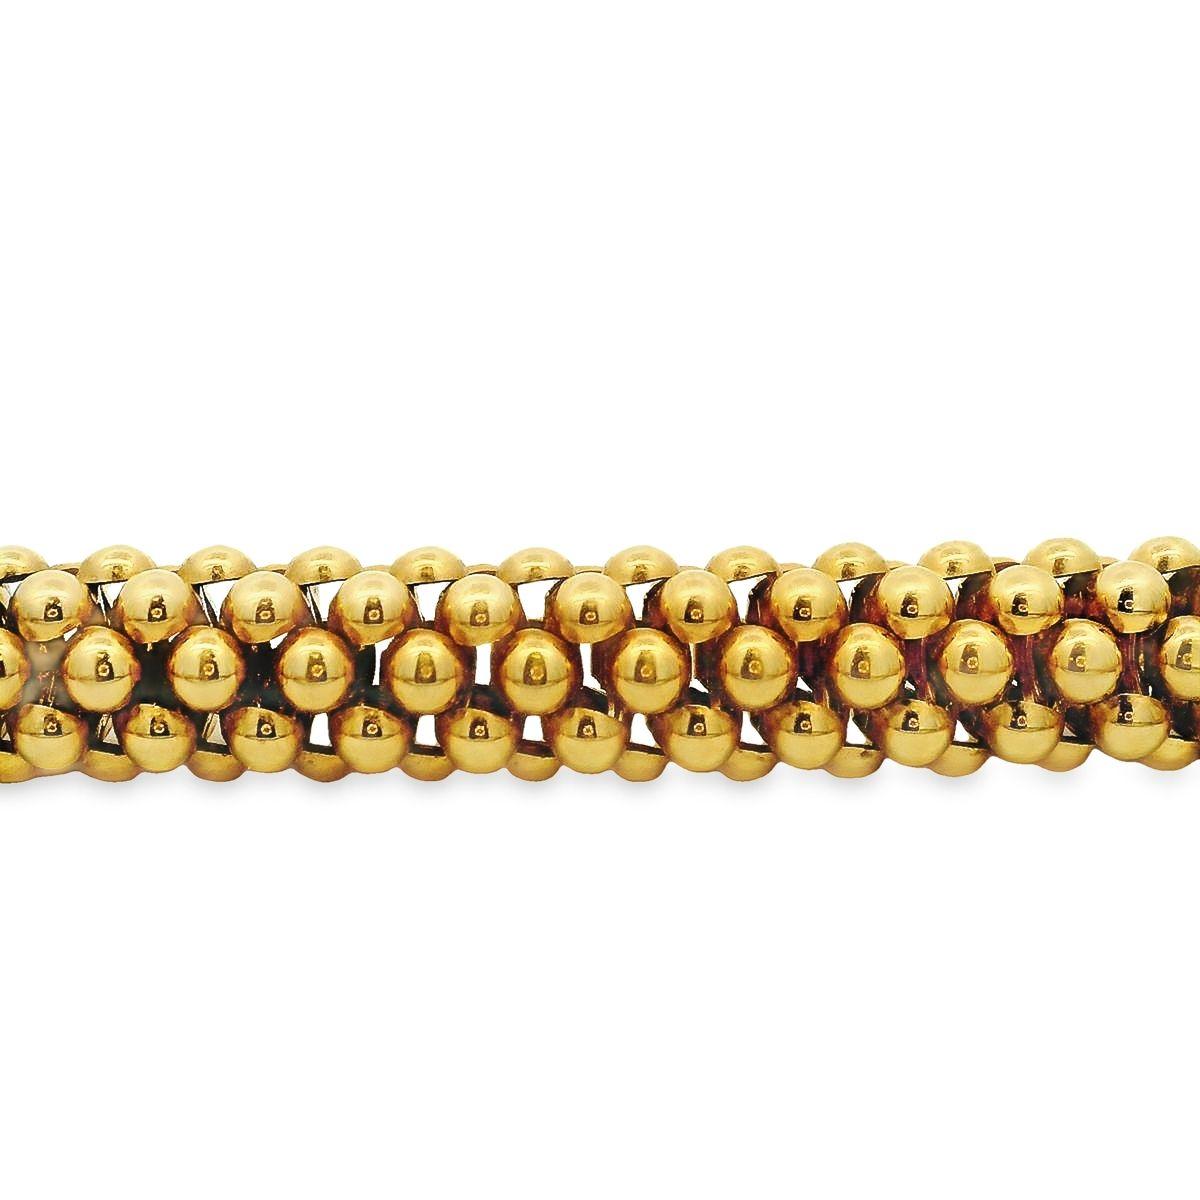 Ce collier de fabrication italienne par Fope est offert par Alex & Co. Ce collier en or jaune 18 carats présente des rangées flexibles de perles imbriquées et un fermoir décoratif arrondi. Le collier pèse 83,80 grammes et mesure 16,50 pouces de long